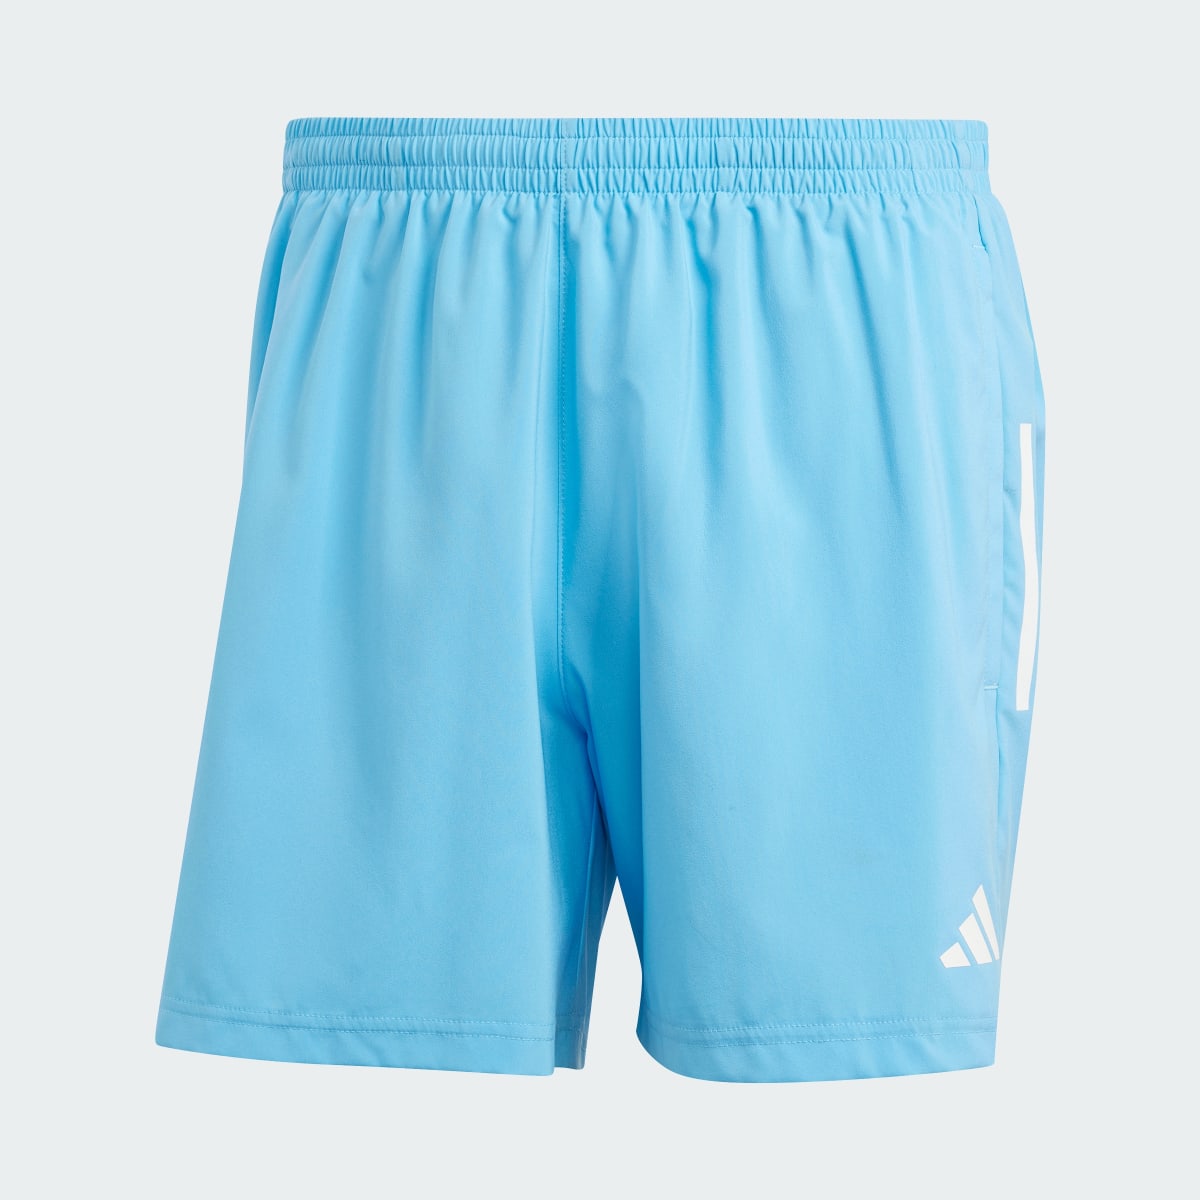 Adidas Own The Run Shorts. 4